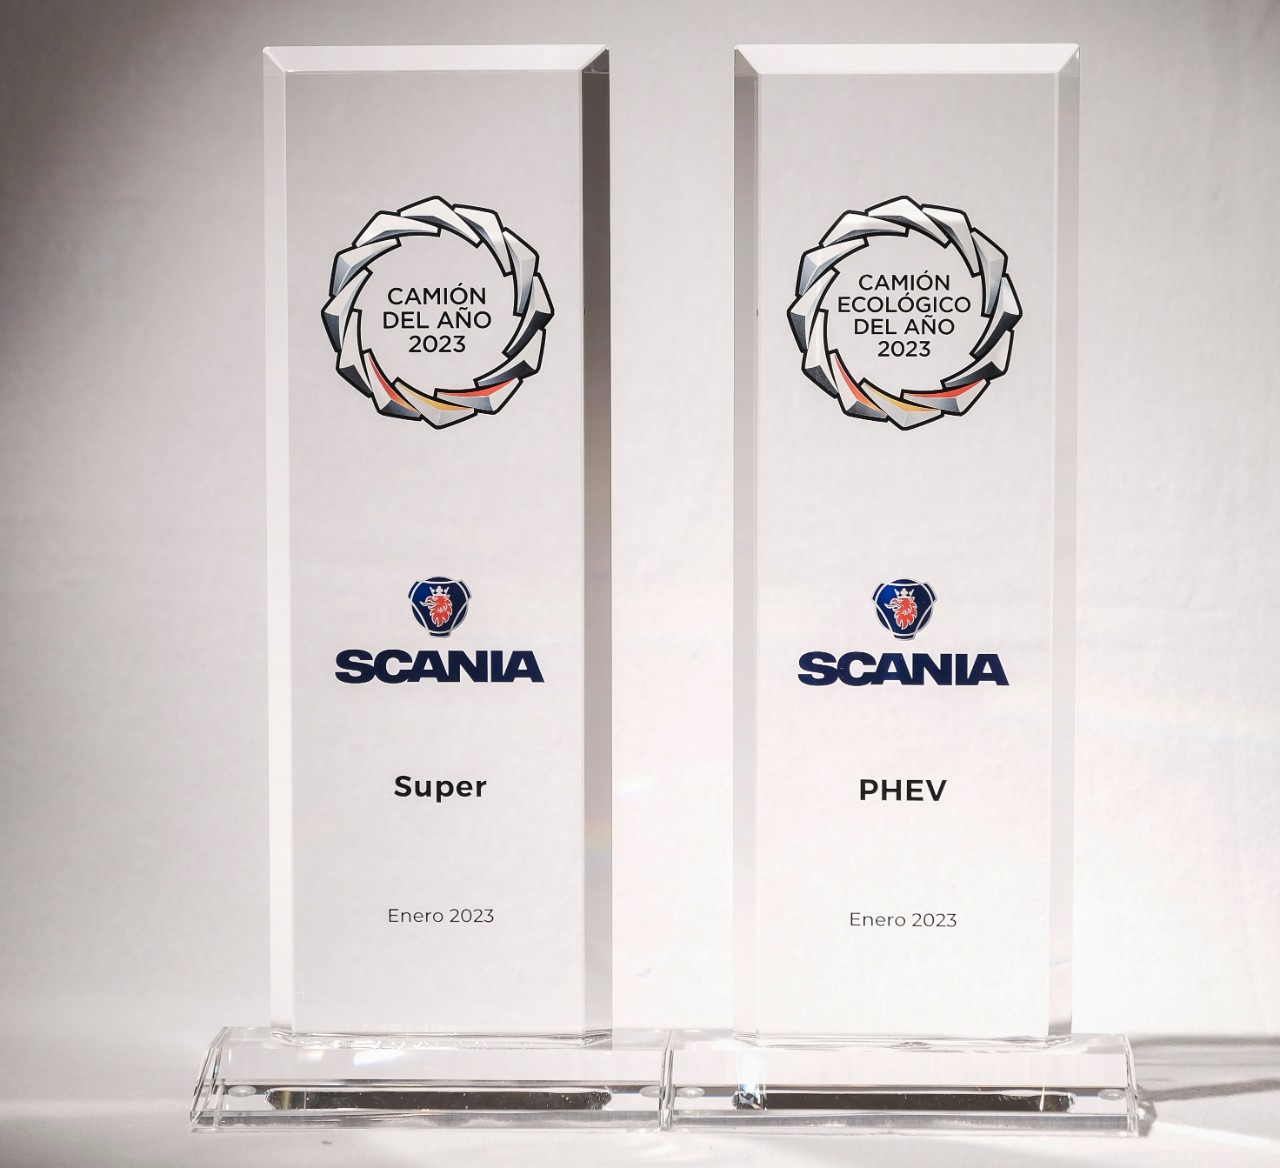 La nueva gama de camiones SCANIA SUPER y el vehículo híbrido de Scania, ganadores de los Premios Nacionales del Transporte 2023